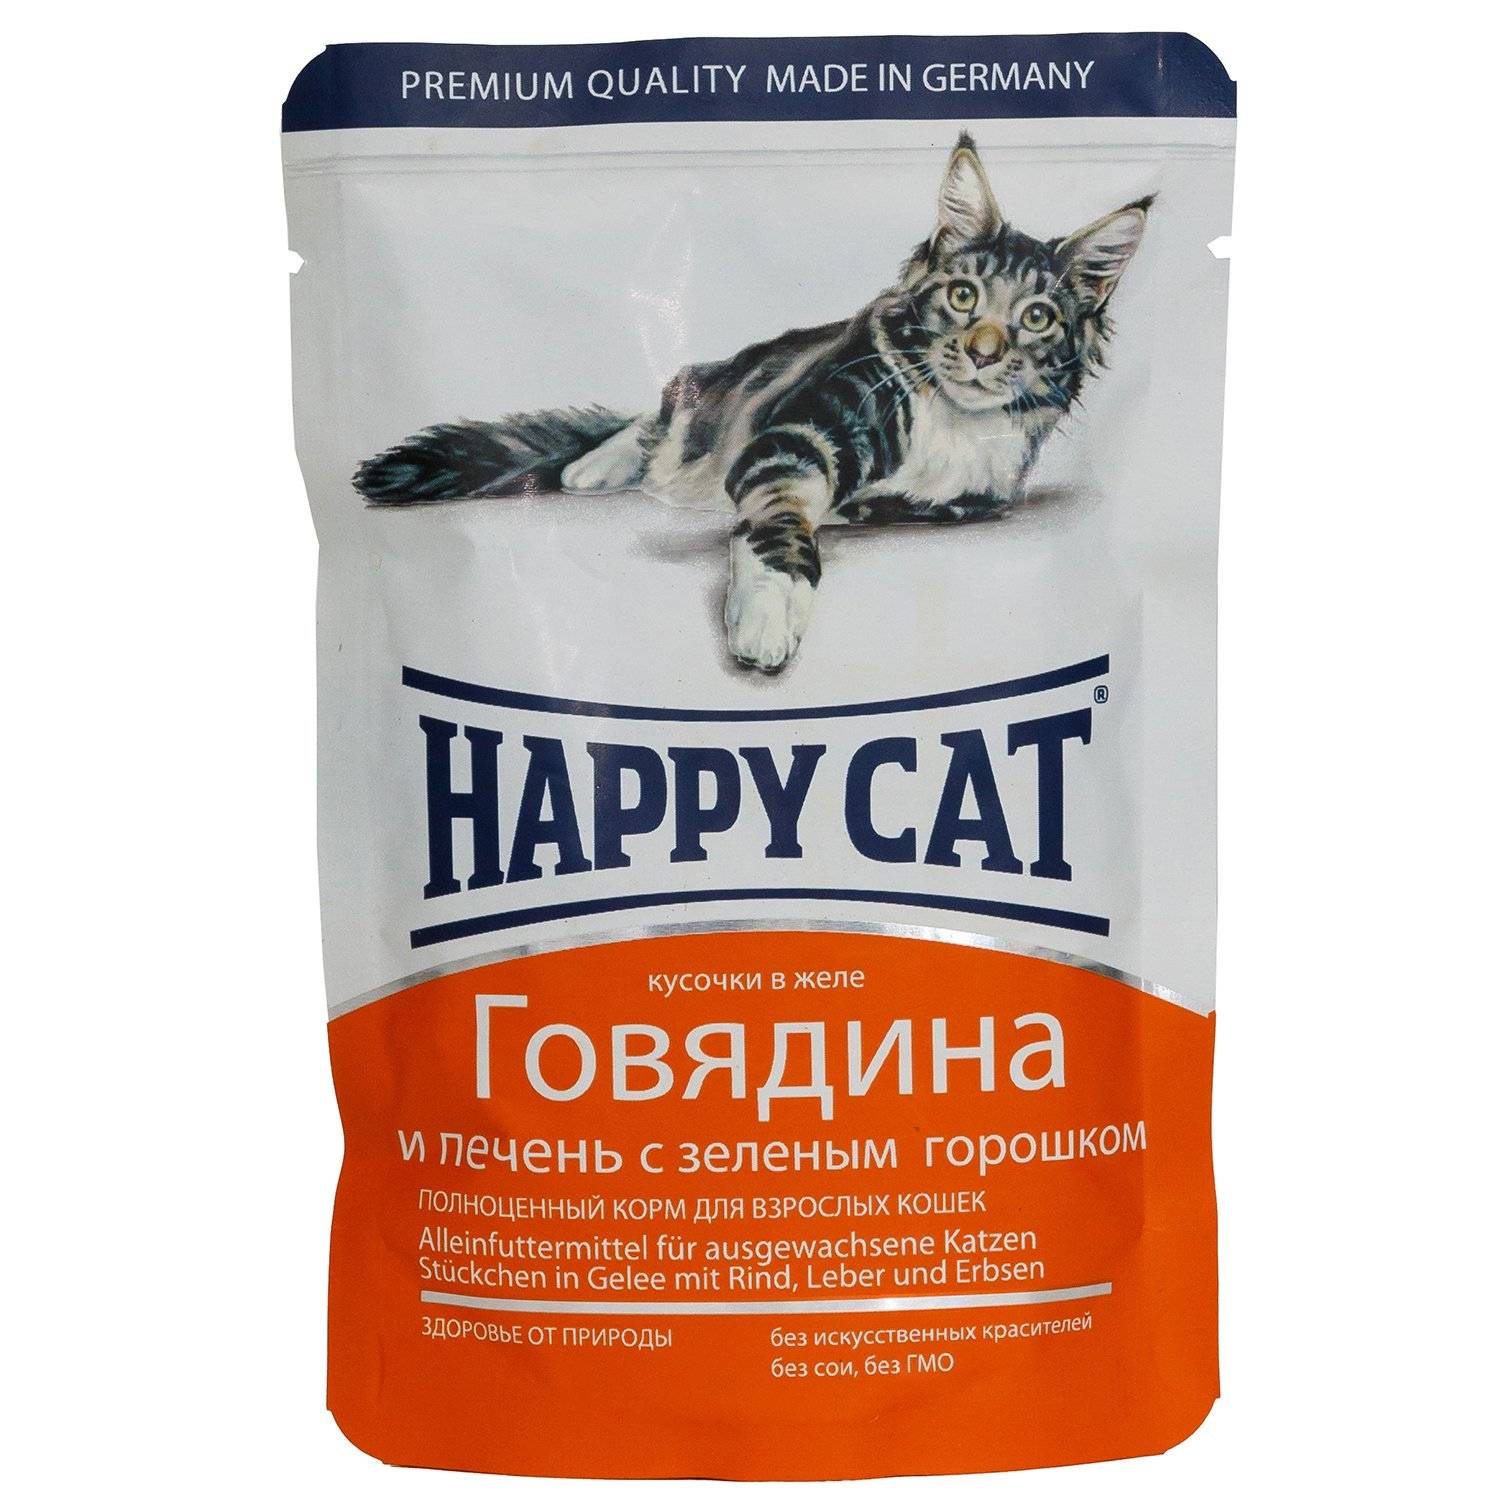 Классы кормов для кошек, классификация по категориям и видам, советы ветеринаров по выбору кошачьего питания